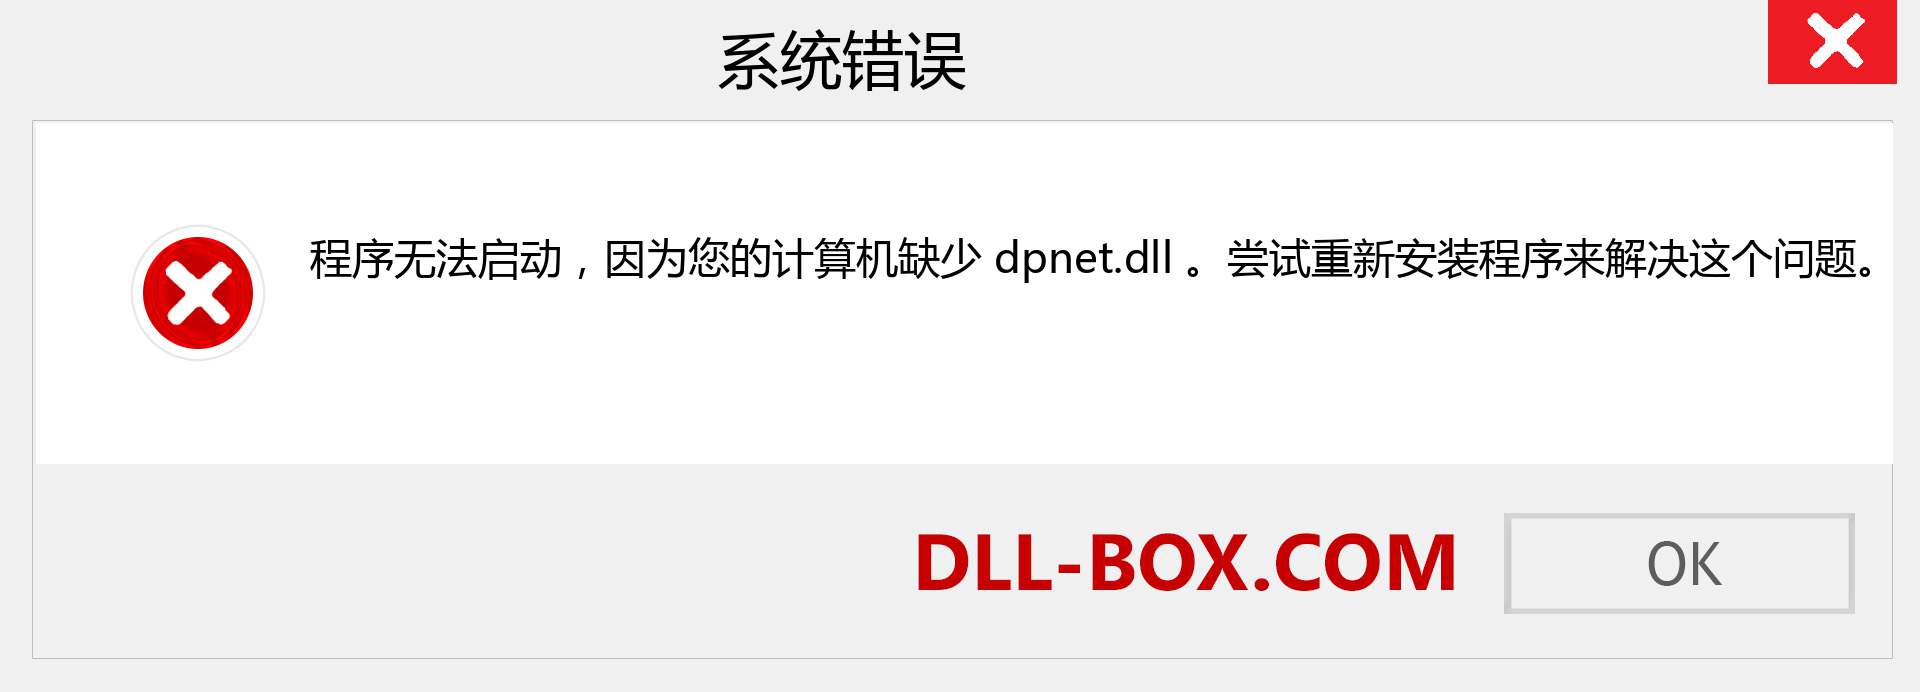 dpnet.dll 文件丢失？。 适用于 Windows 7、8、10 的下载 - 修复 Windows、照片、图像上的 dpnet dll 丢失错误